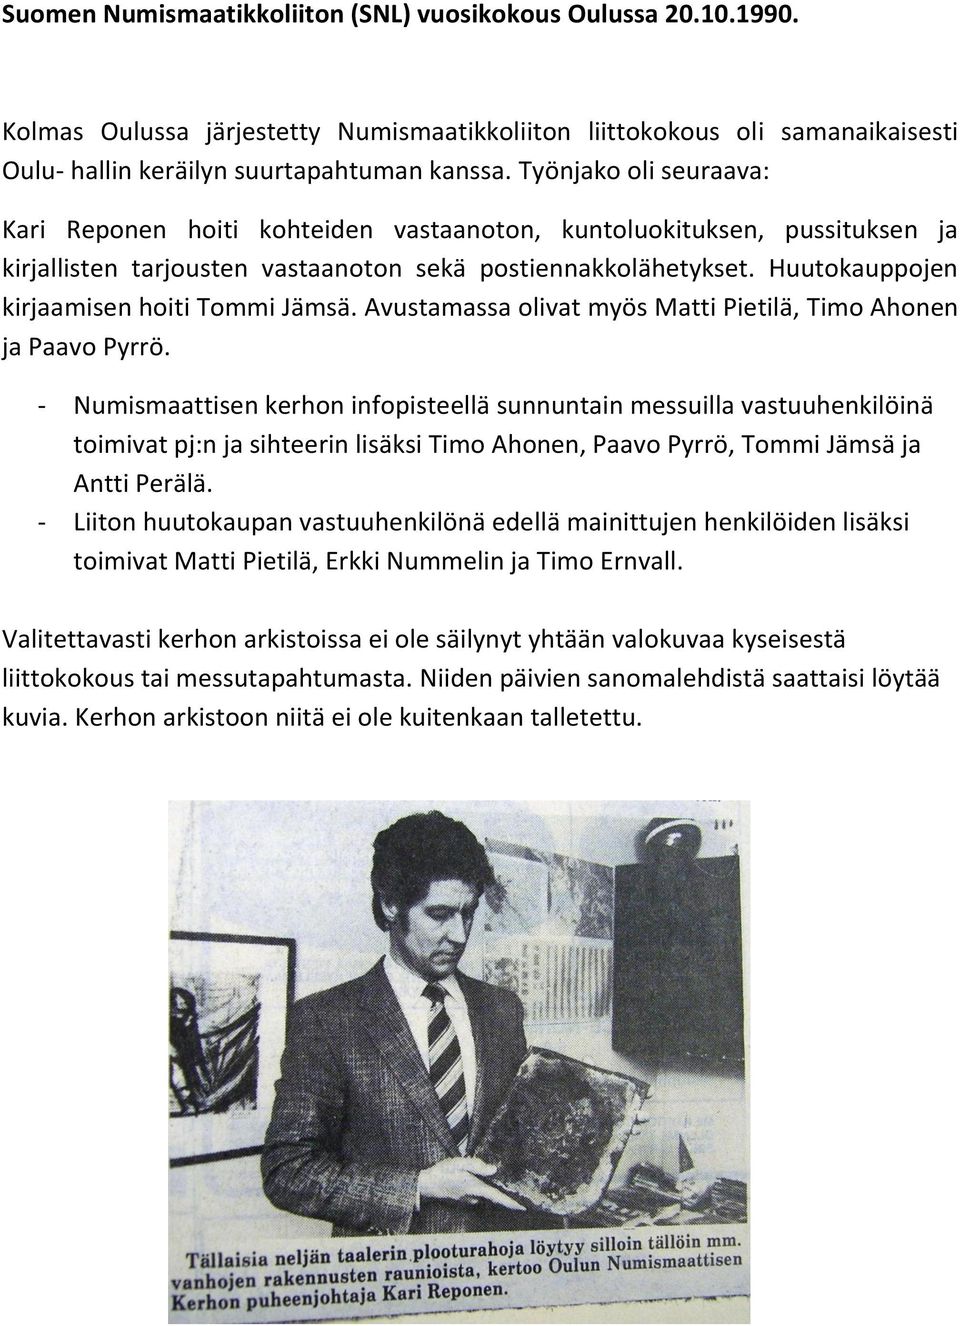 Huutokauppojen kirjaamisen hoiti Tommi Jämsä. Avustamassa olivat myös Matti Pietilä, Timo Ahonen ja Paavo Pyrrö.